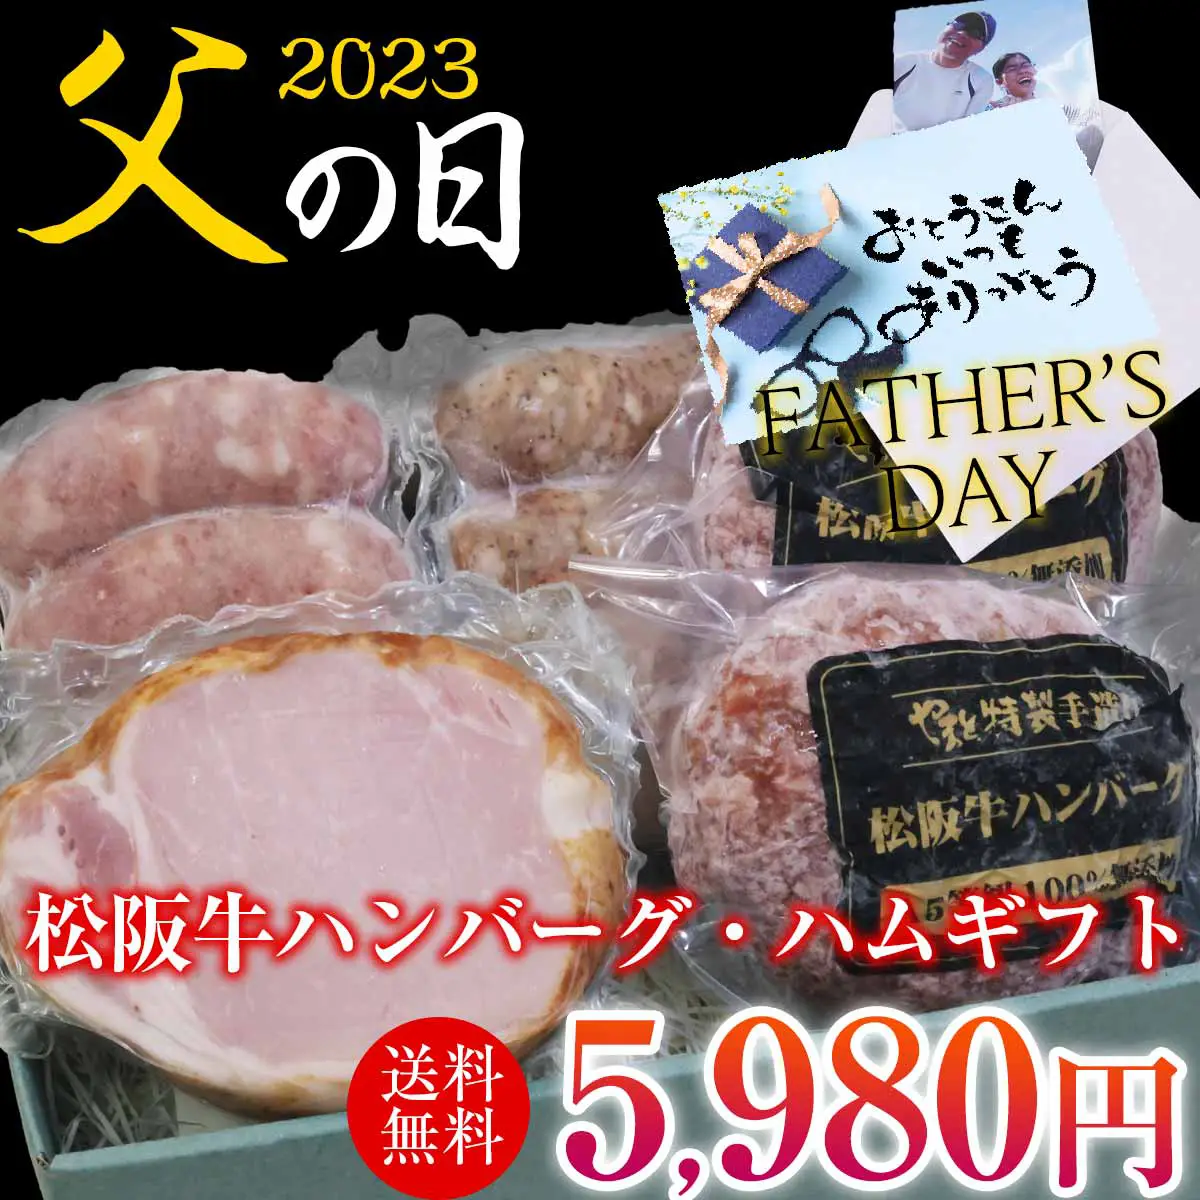 【父の日】松阪牛ハンバーグ・ハムギフトセットA